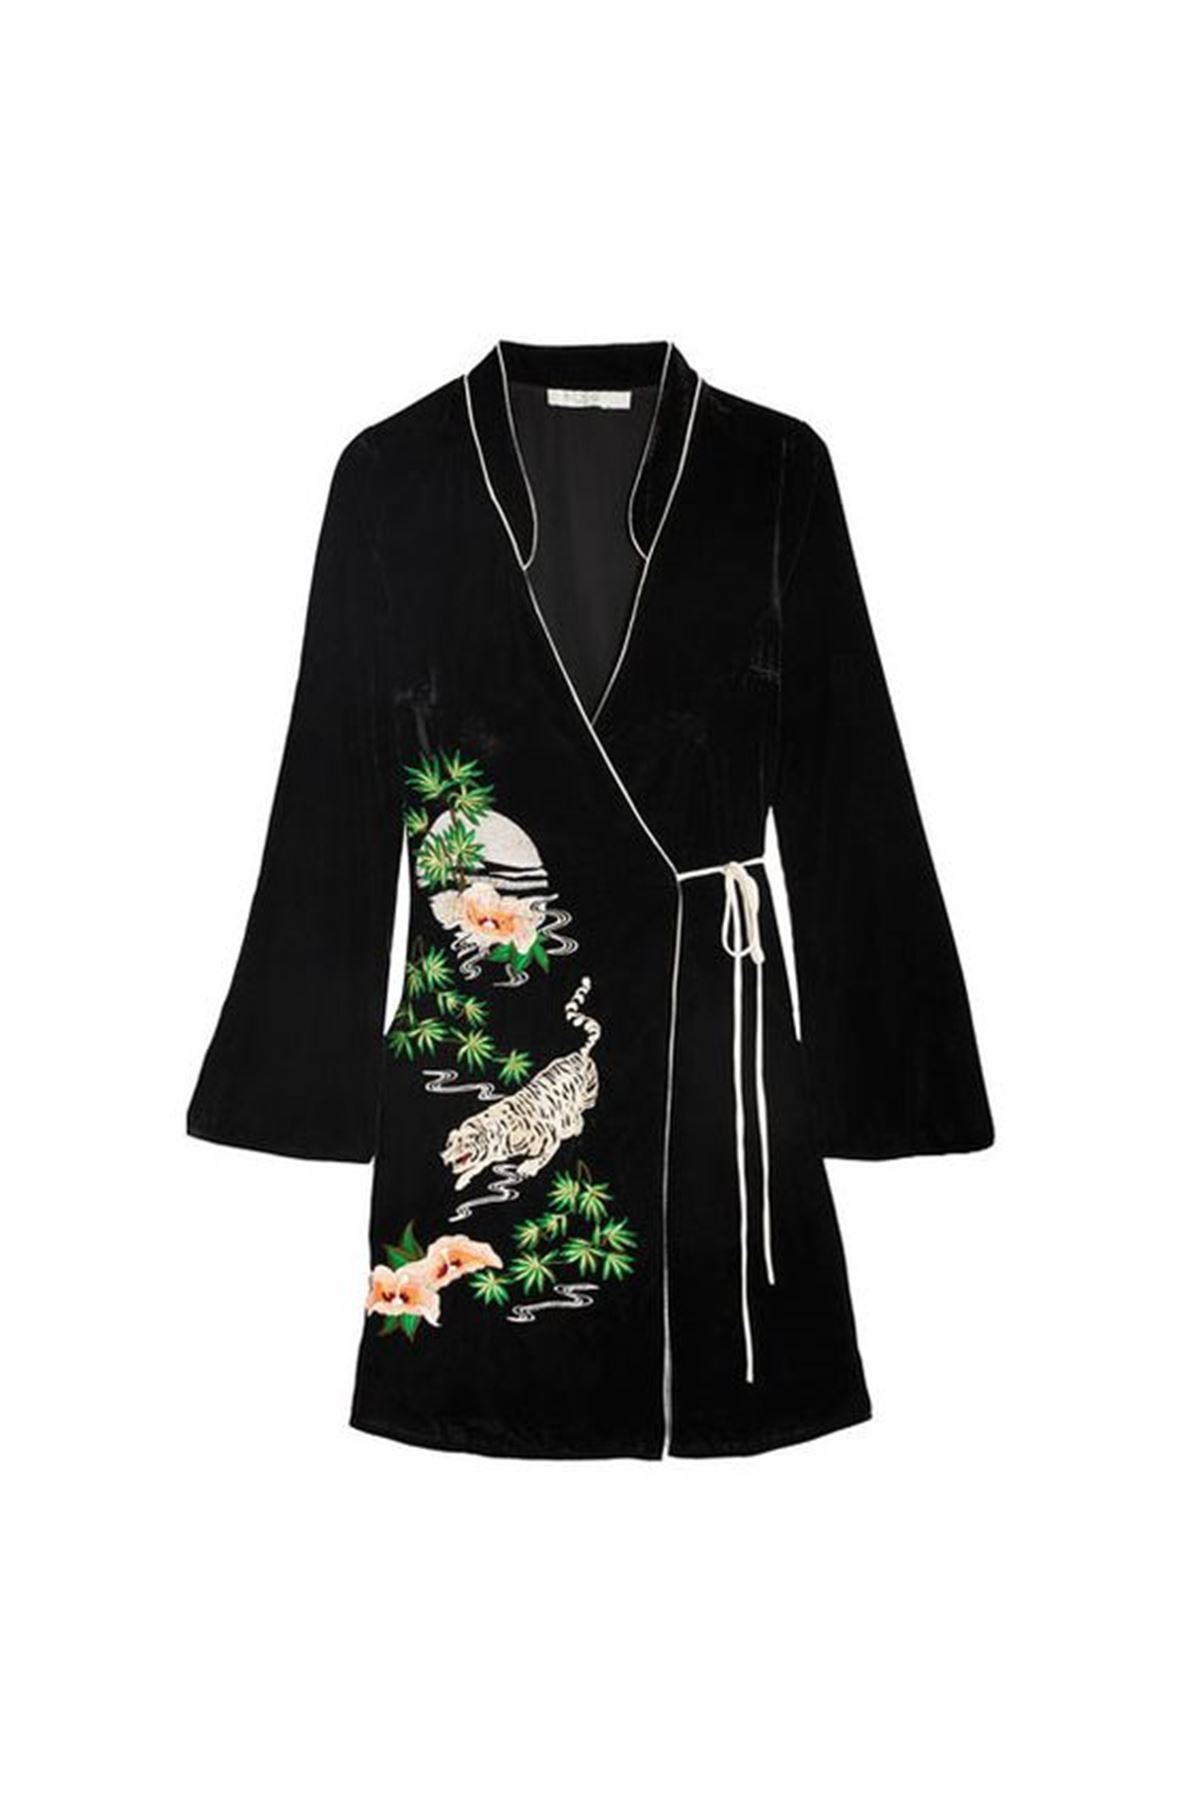 Kimono elbise japon siyah kadife baskı yesıl